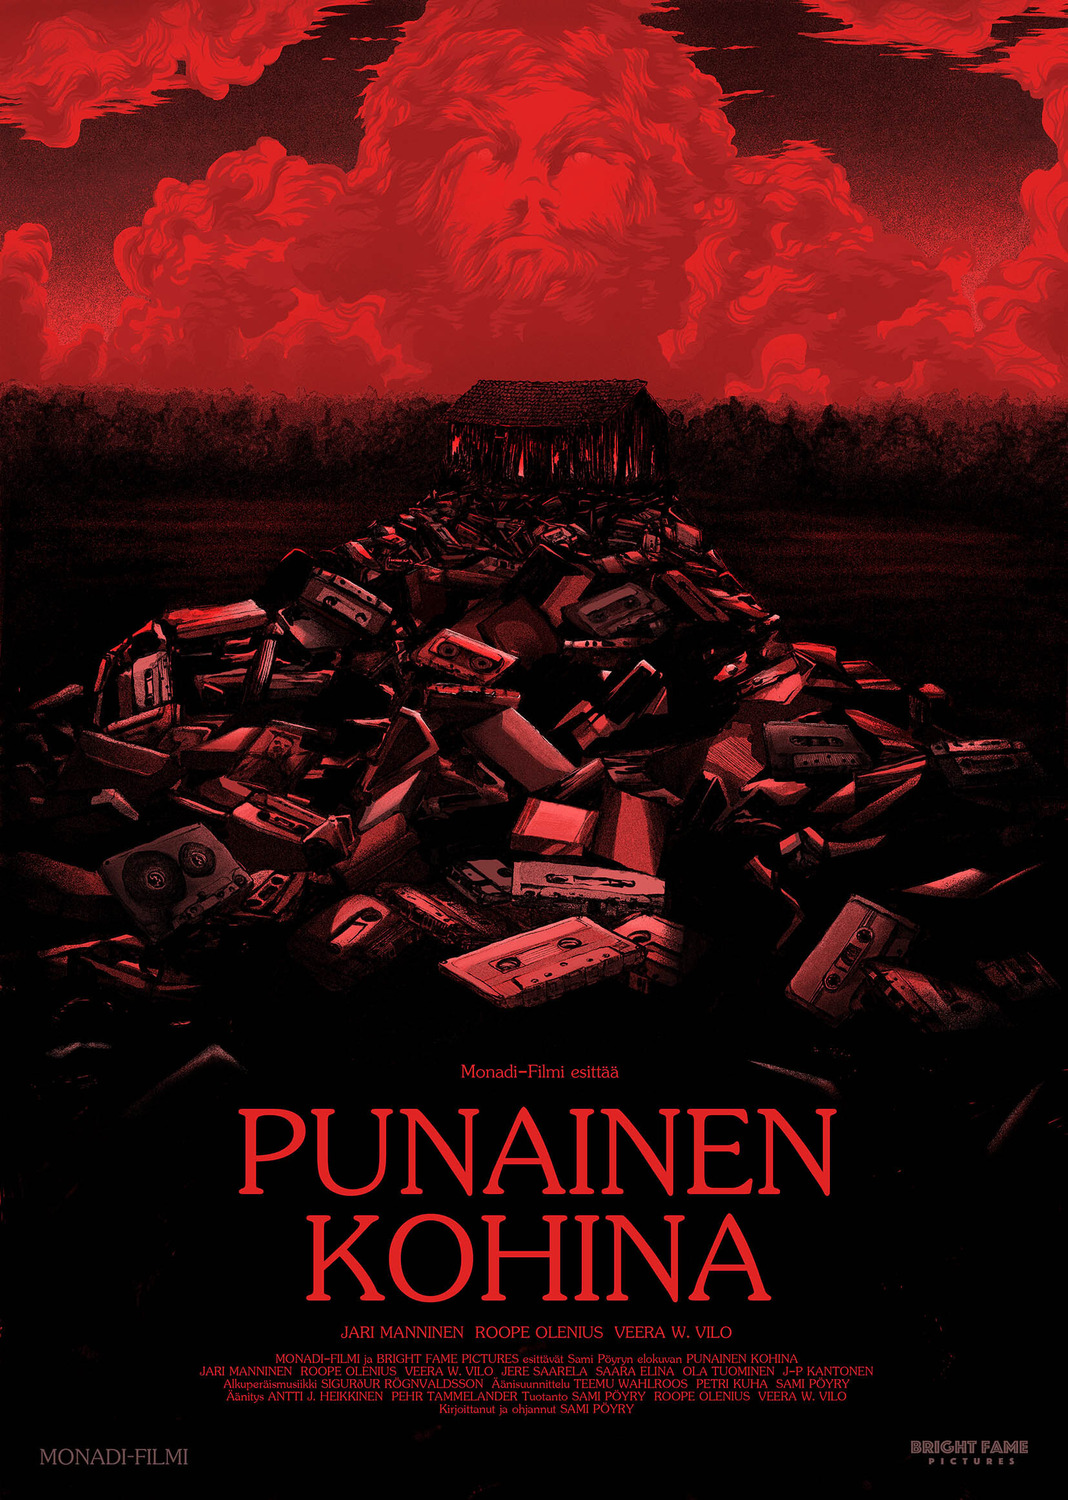 Extra Large Movie Poster Image for Punainen kohina 